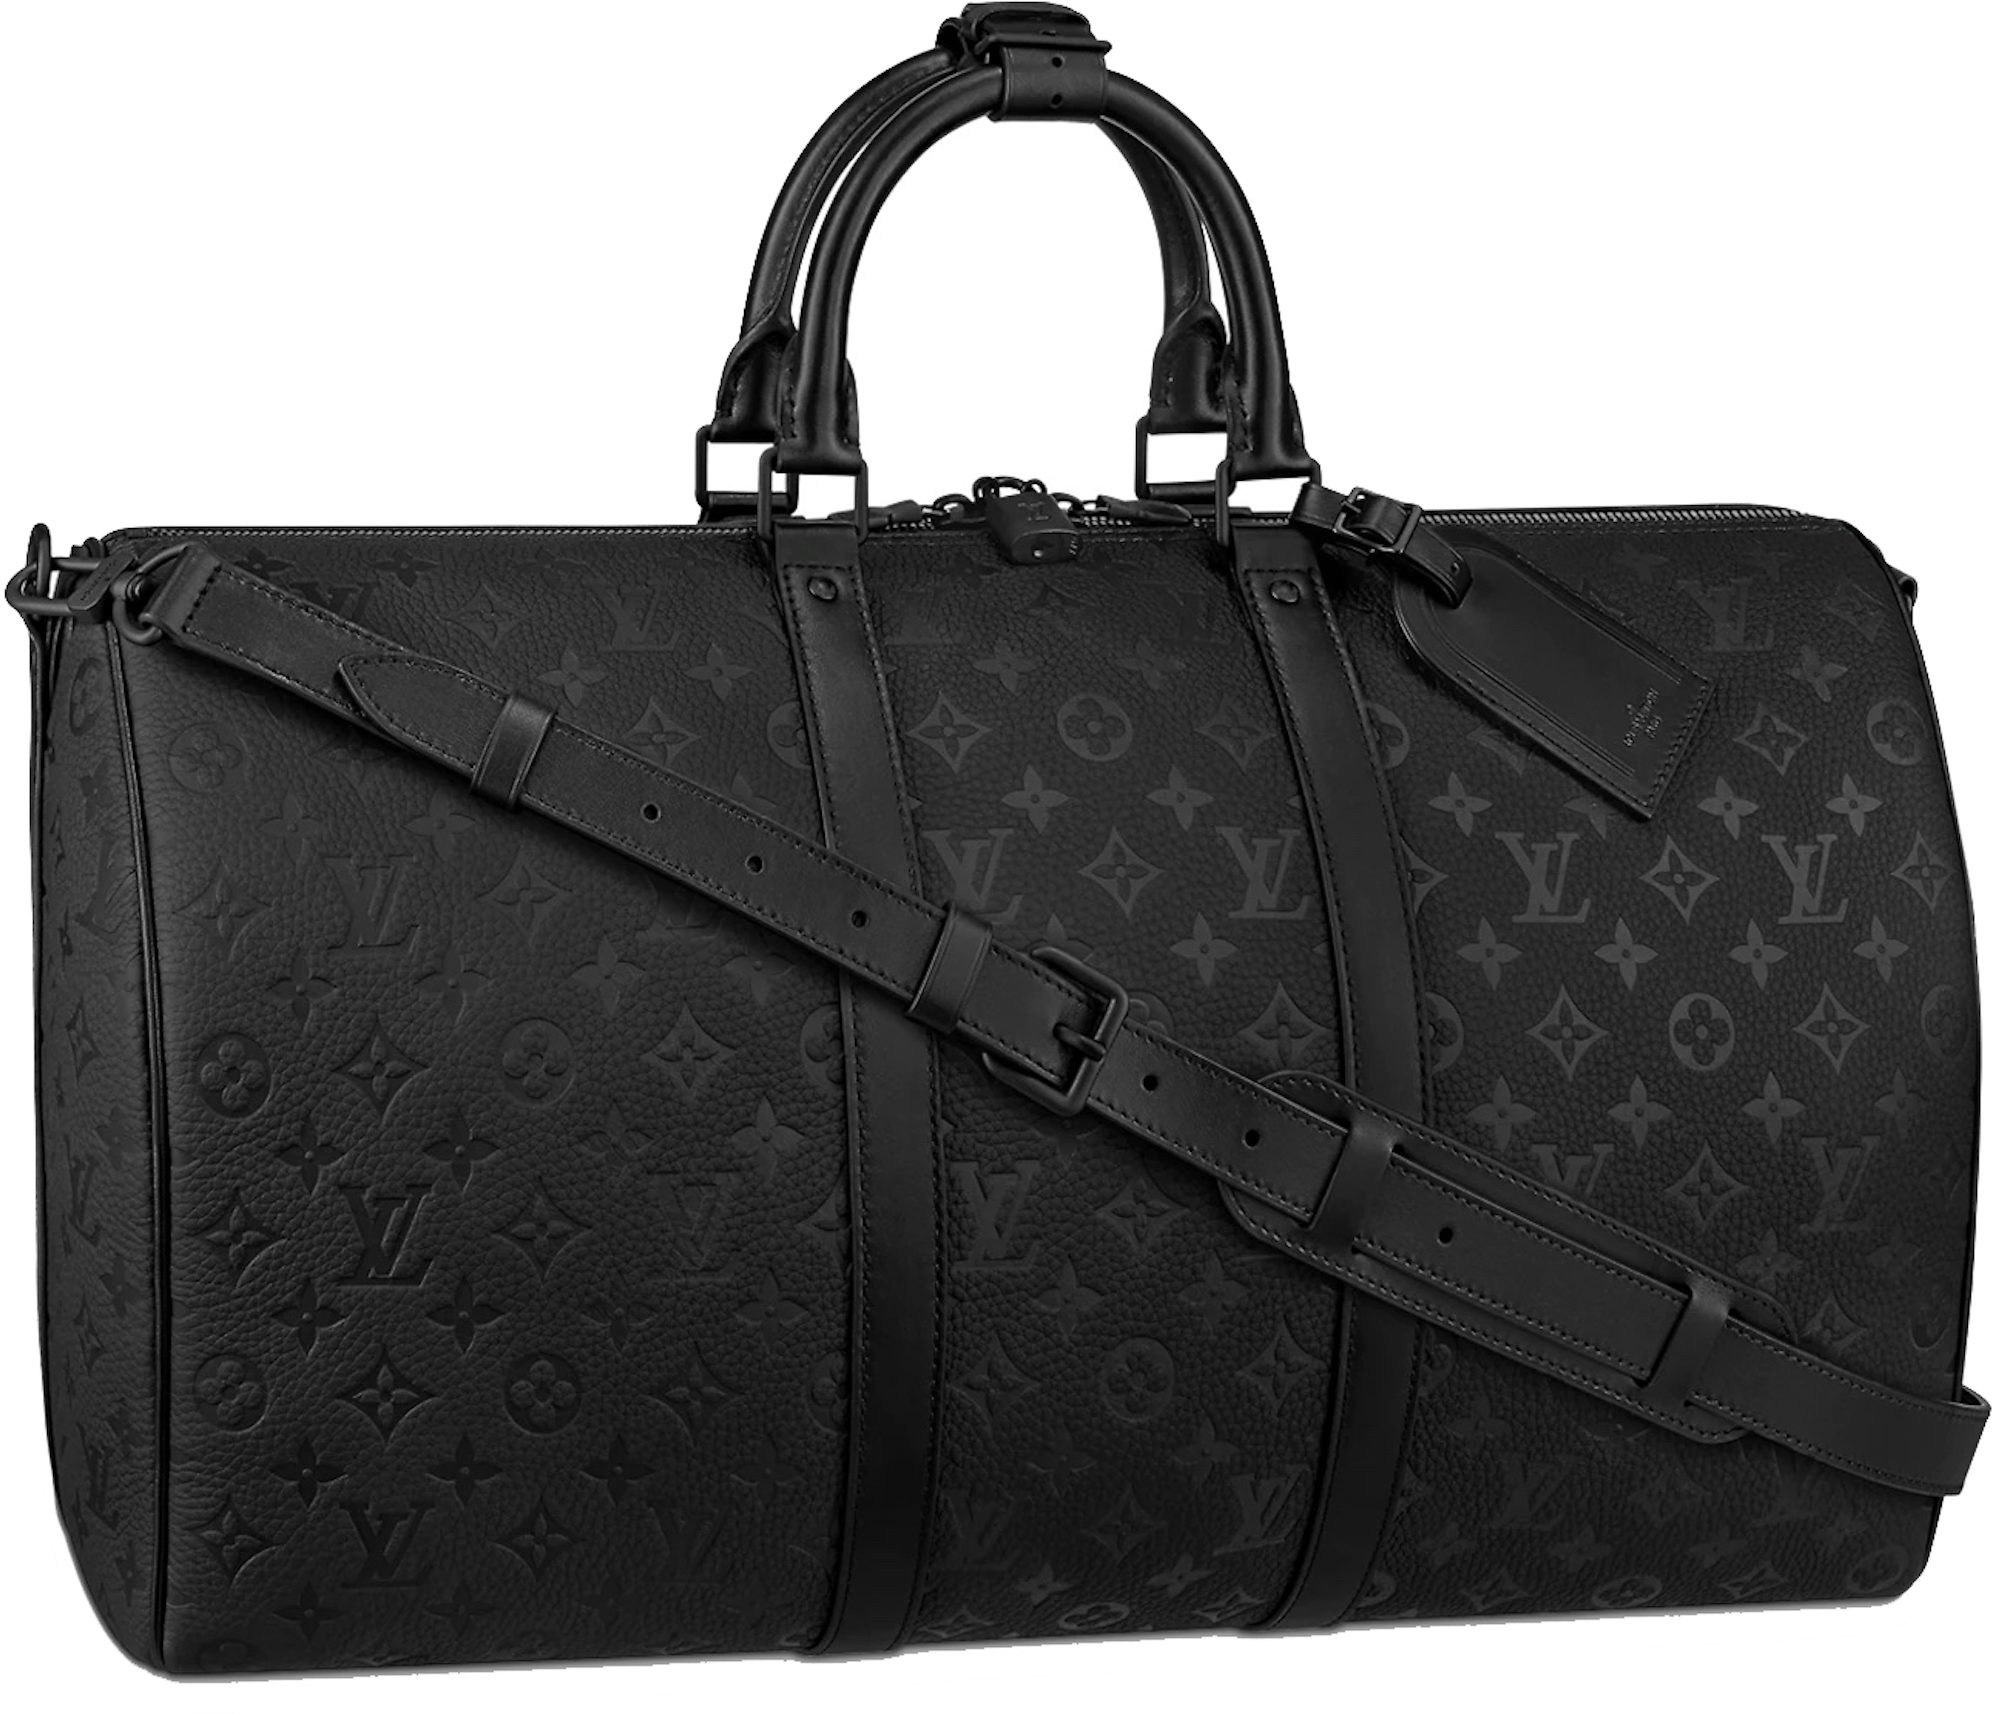 Louis Vuitton Keepall Bandoulière 50 Black Taurillon